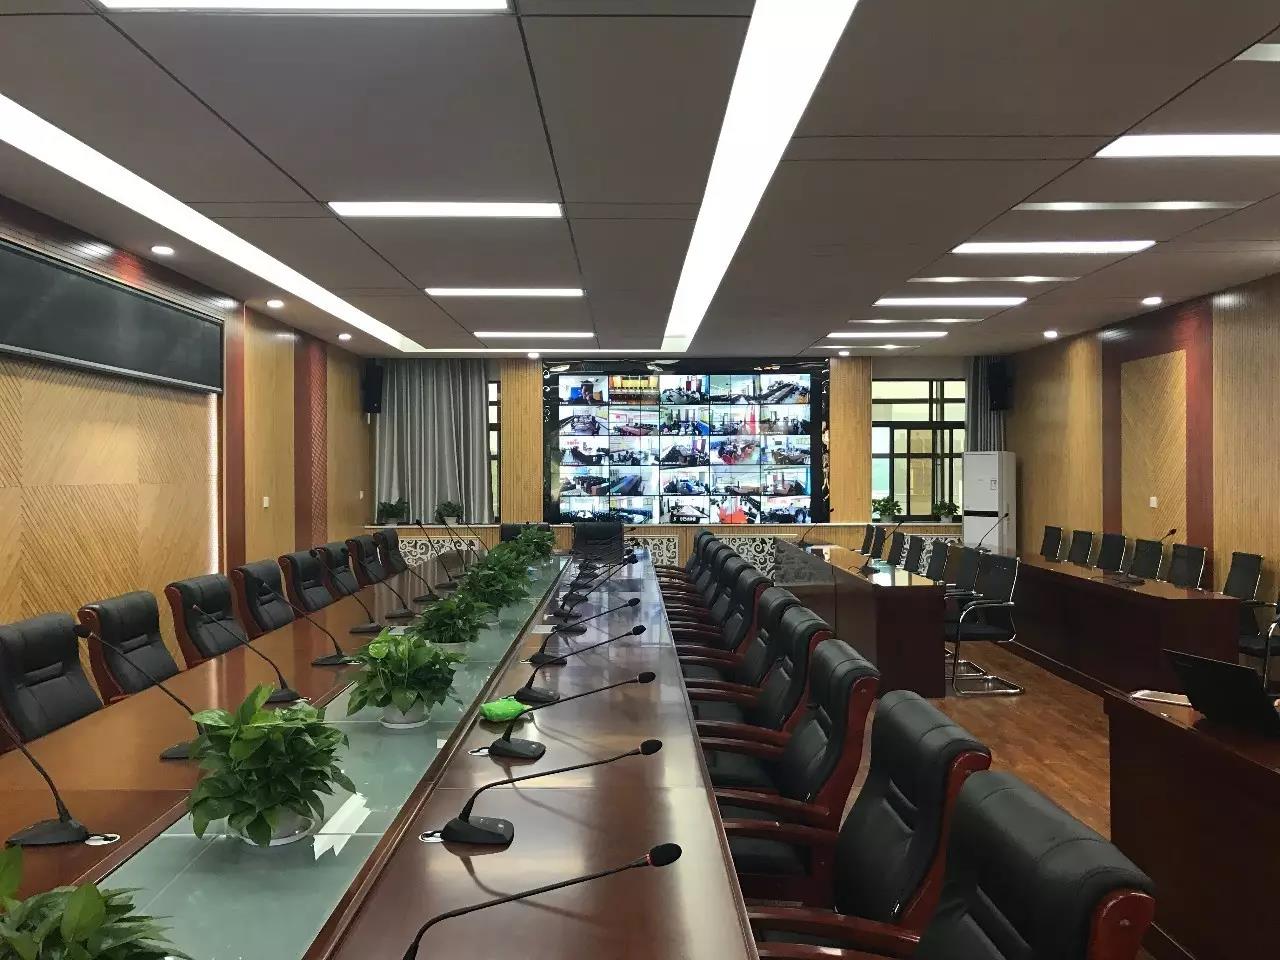 视频会议室